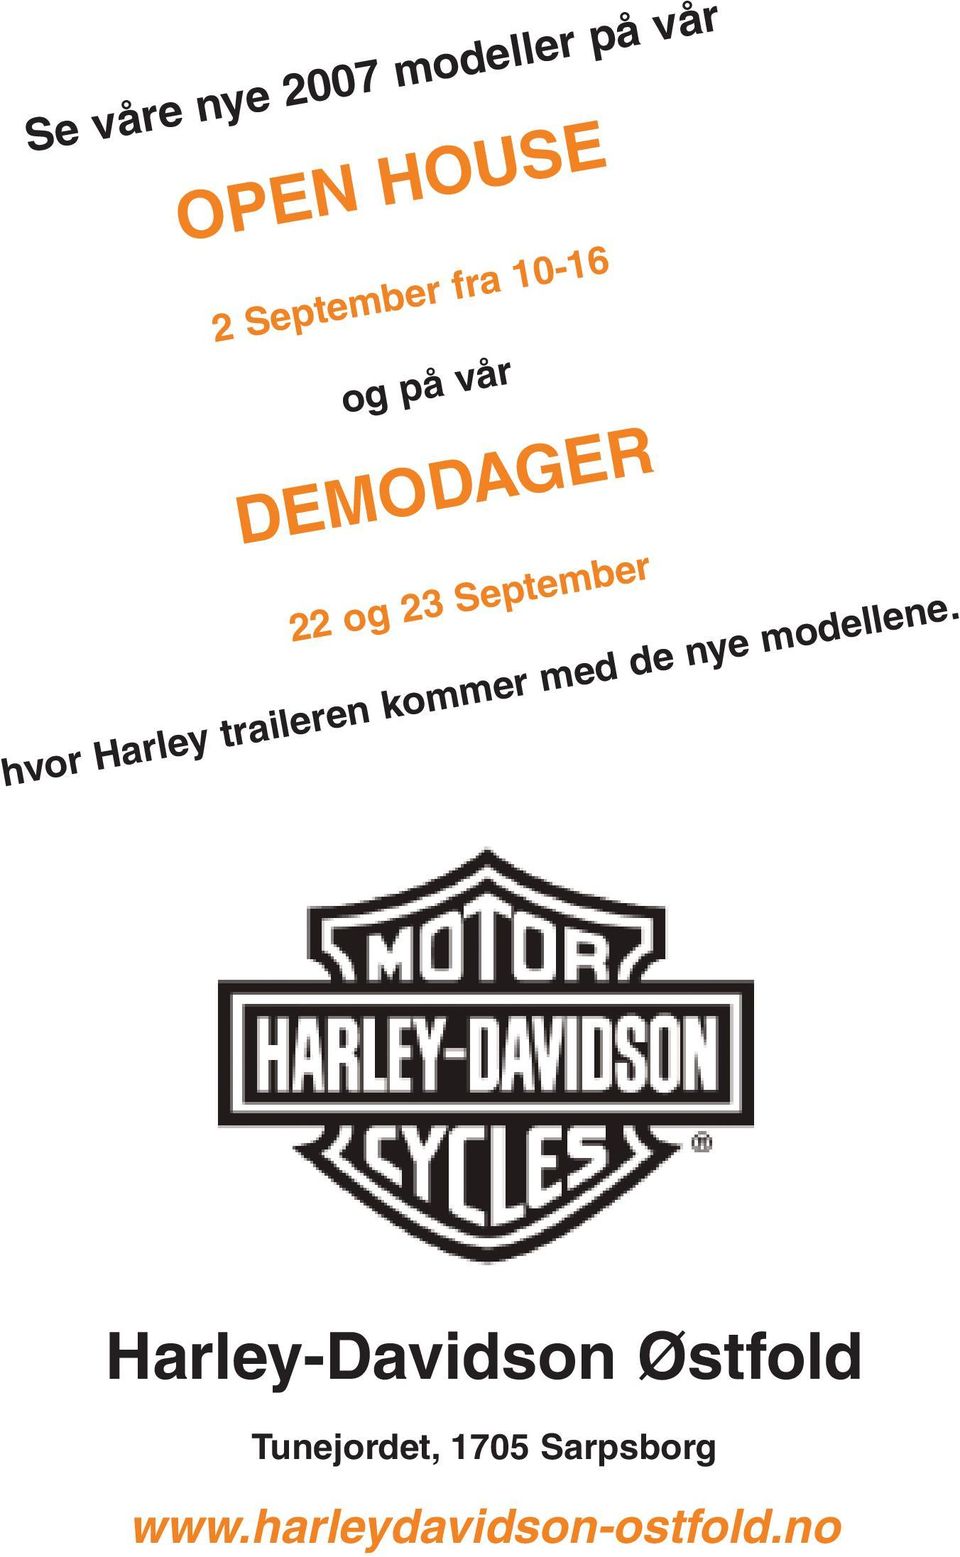 Harley traileren kommer med de nye modellene.